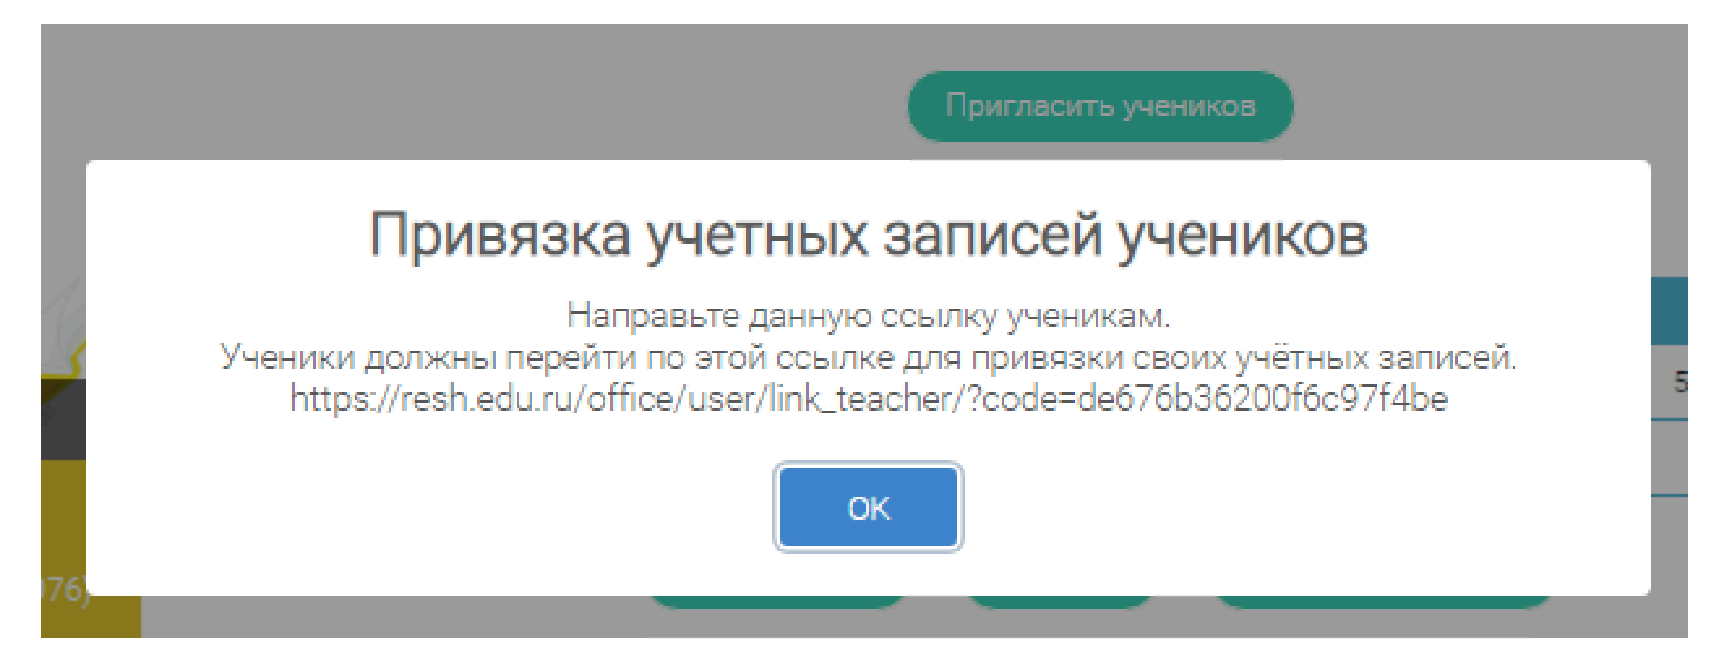 Российская электронная школа рабочие программы учебных предметов